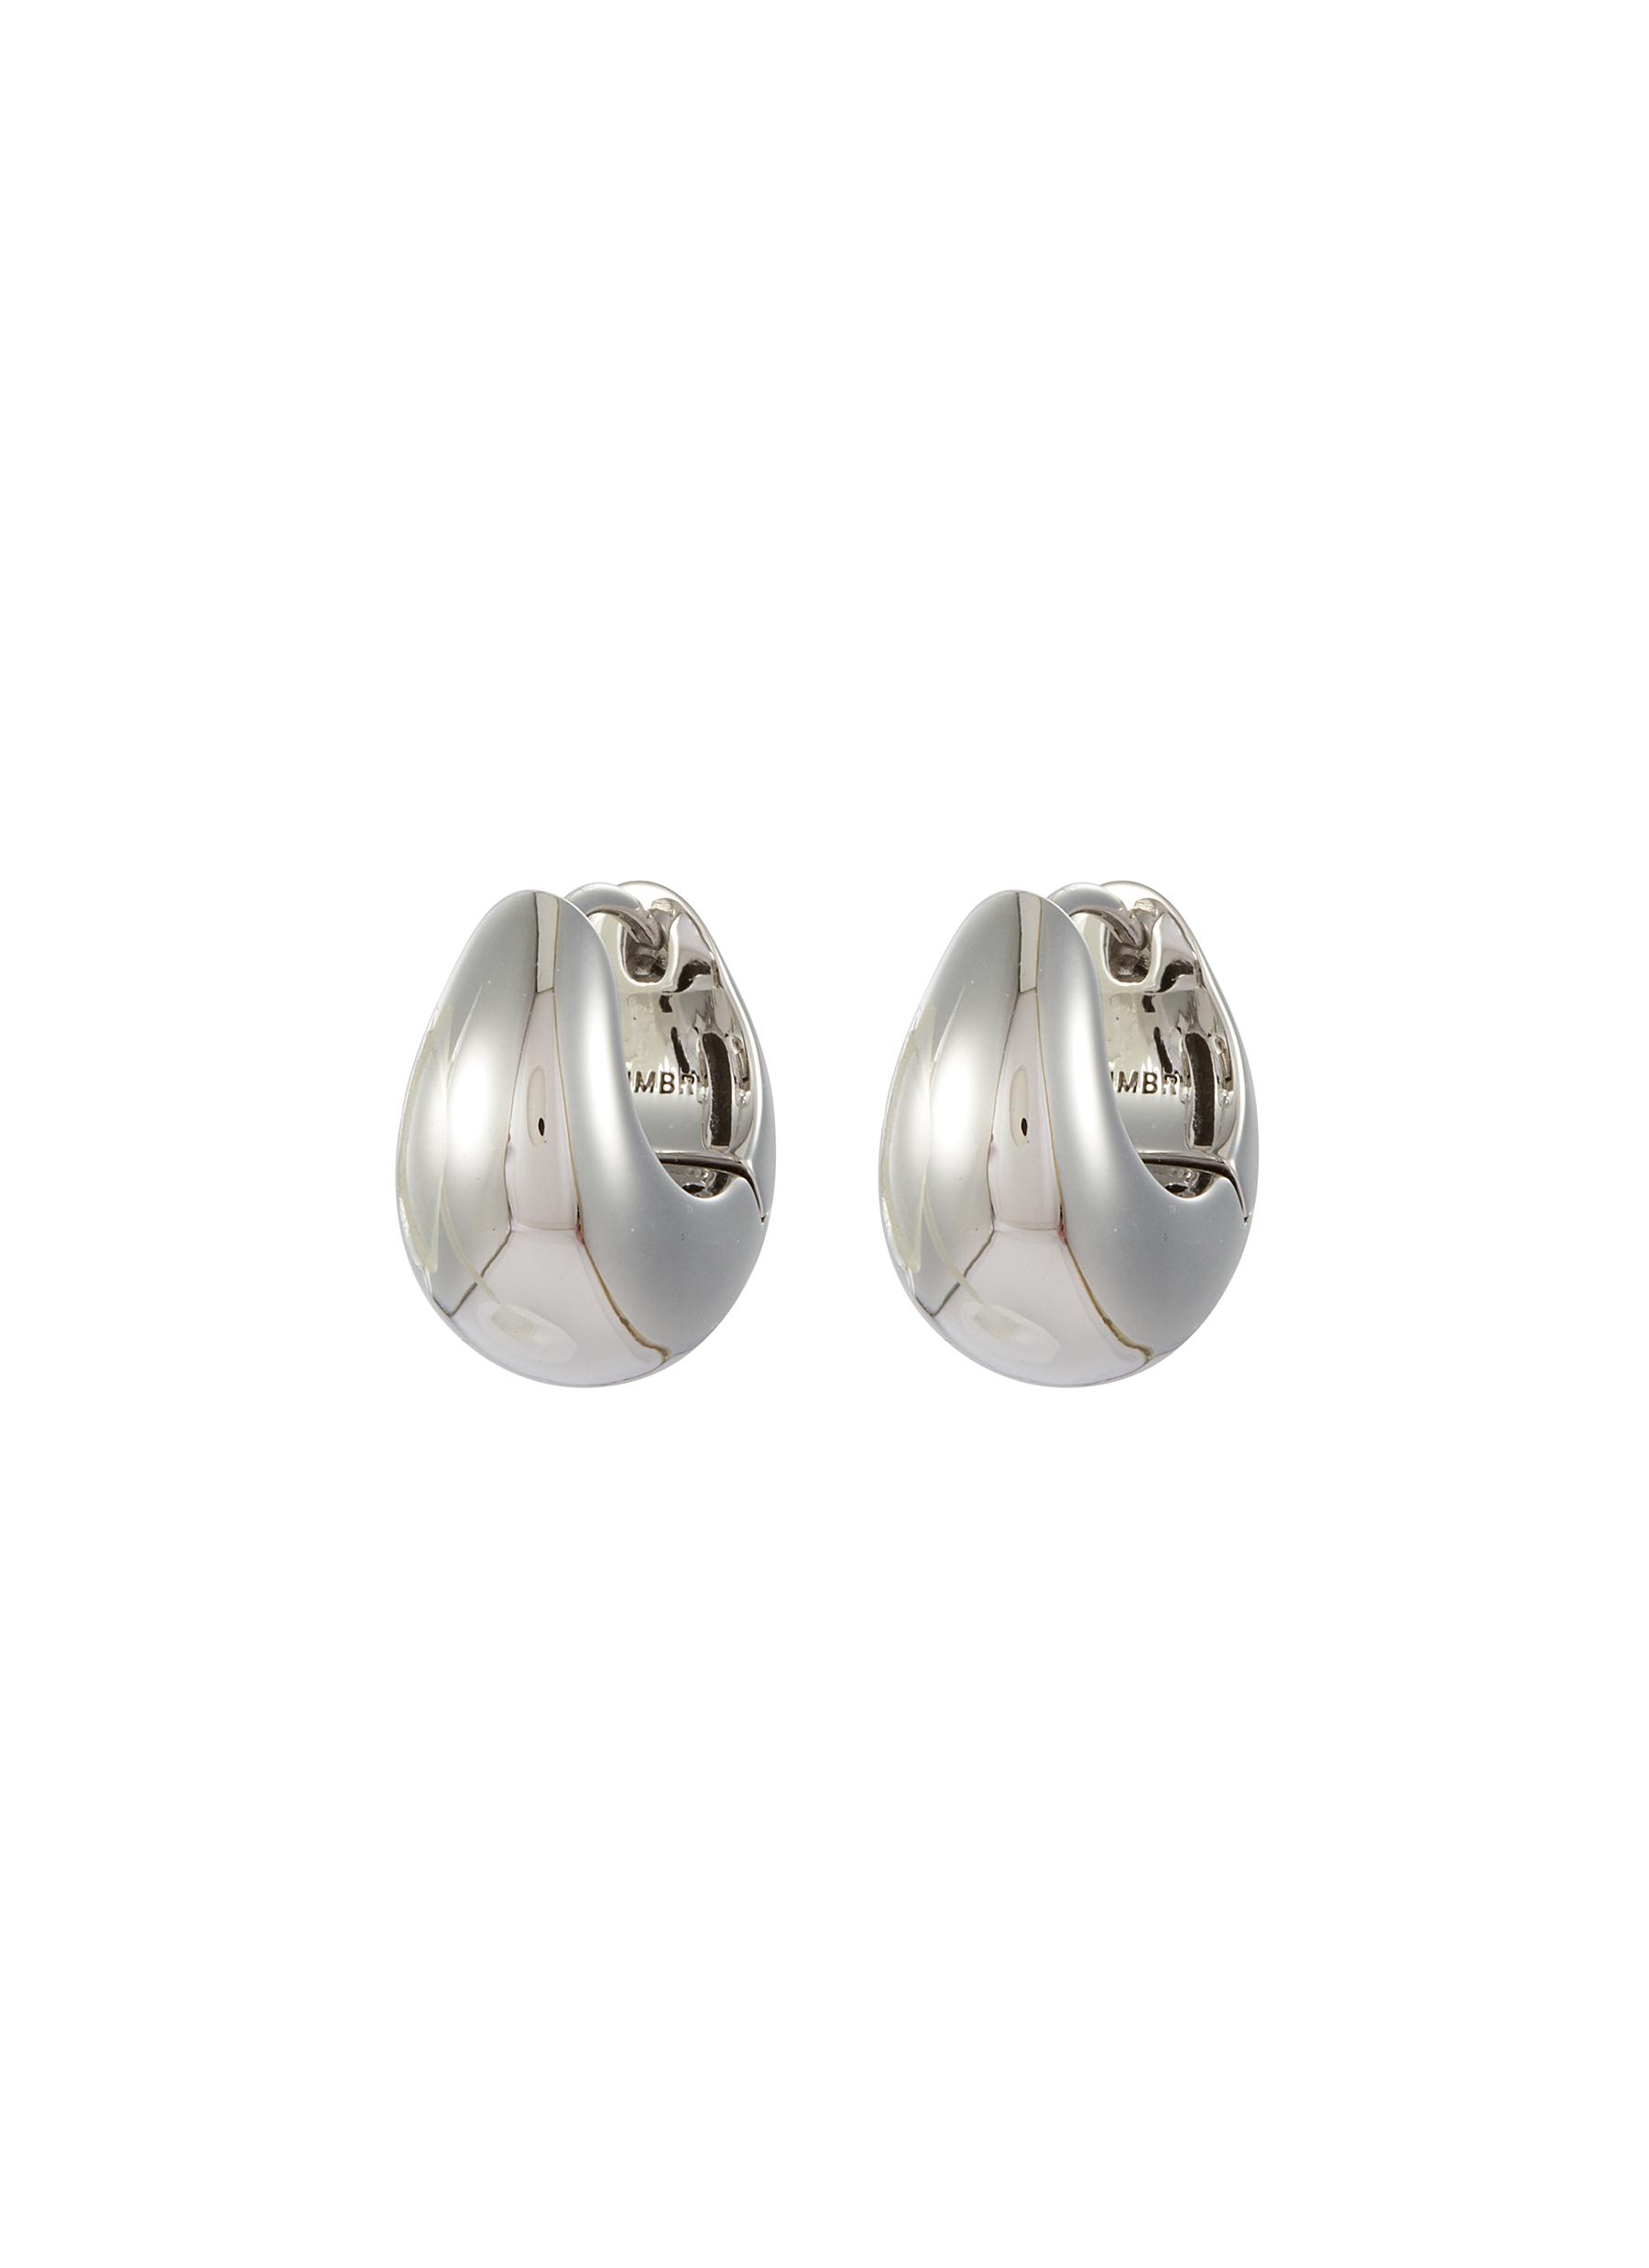 Rhodium Plasted Sterling Silver Hoop Earrings